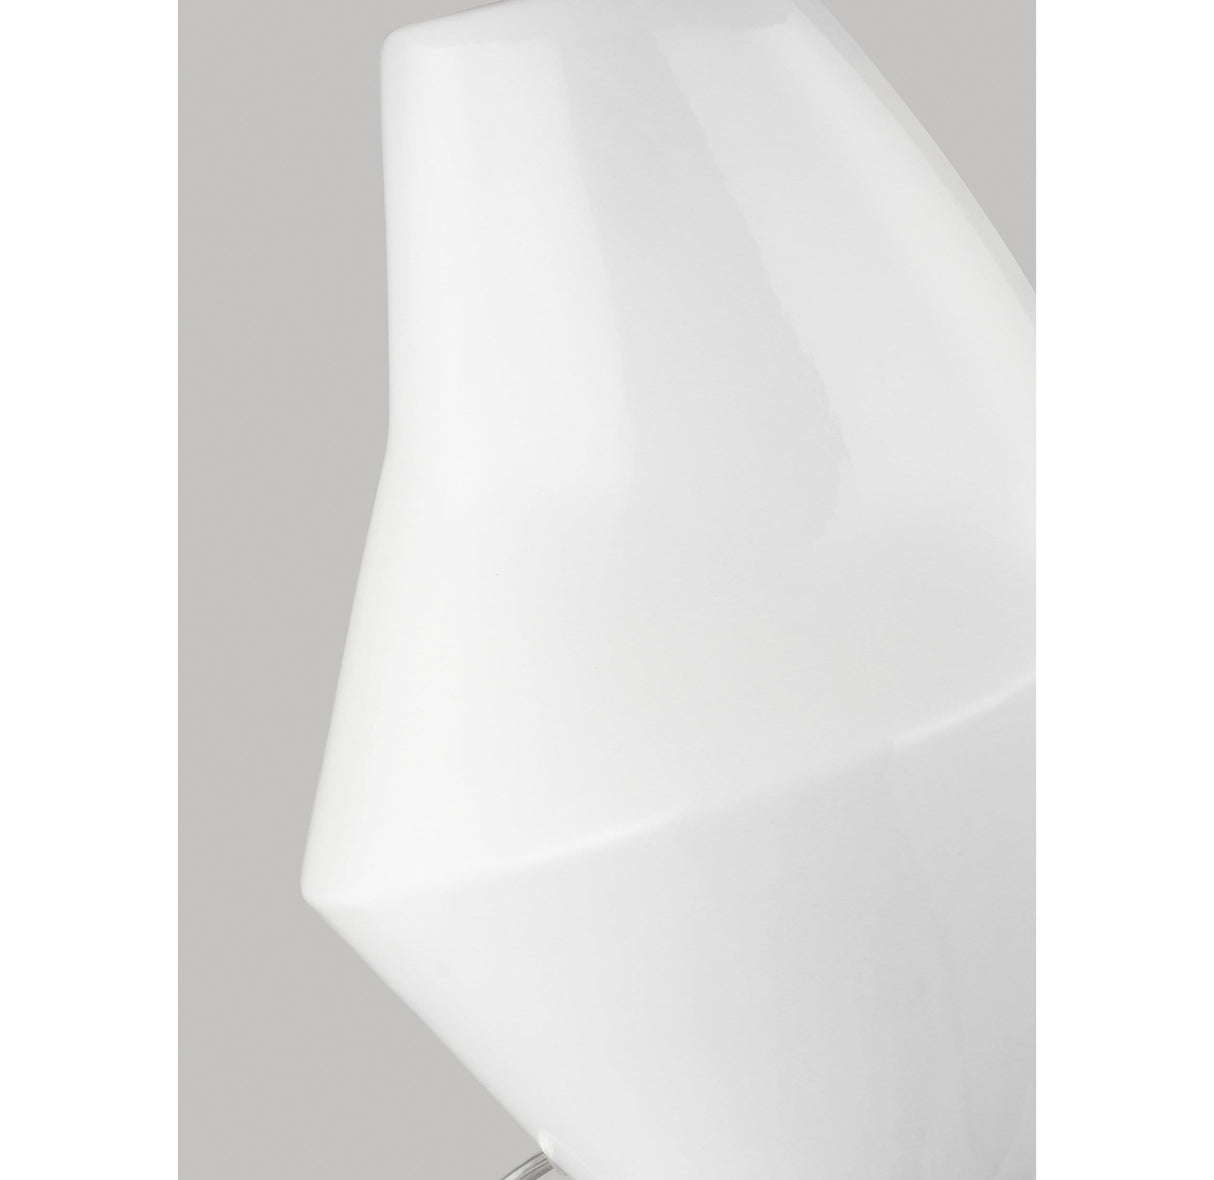 Kelly Wearstler Contour Short Table Lamp - Artic White Lighting